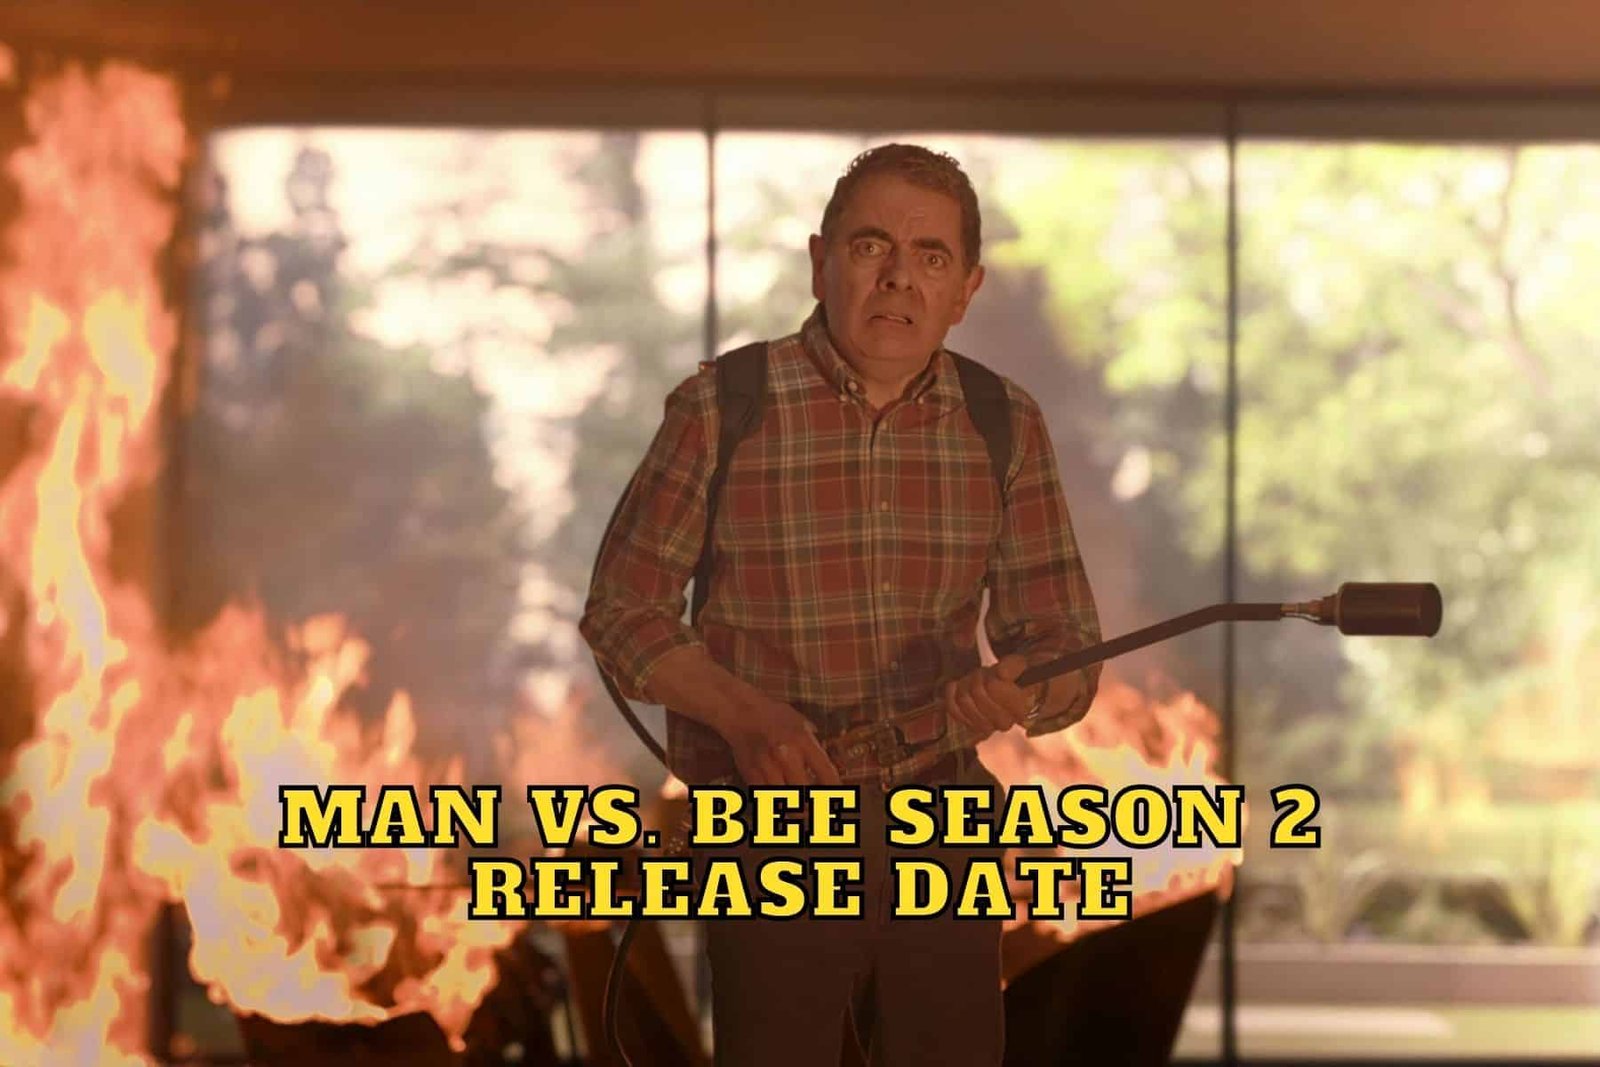 Man vs. Bee Season 2 Release Date, Trailer